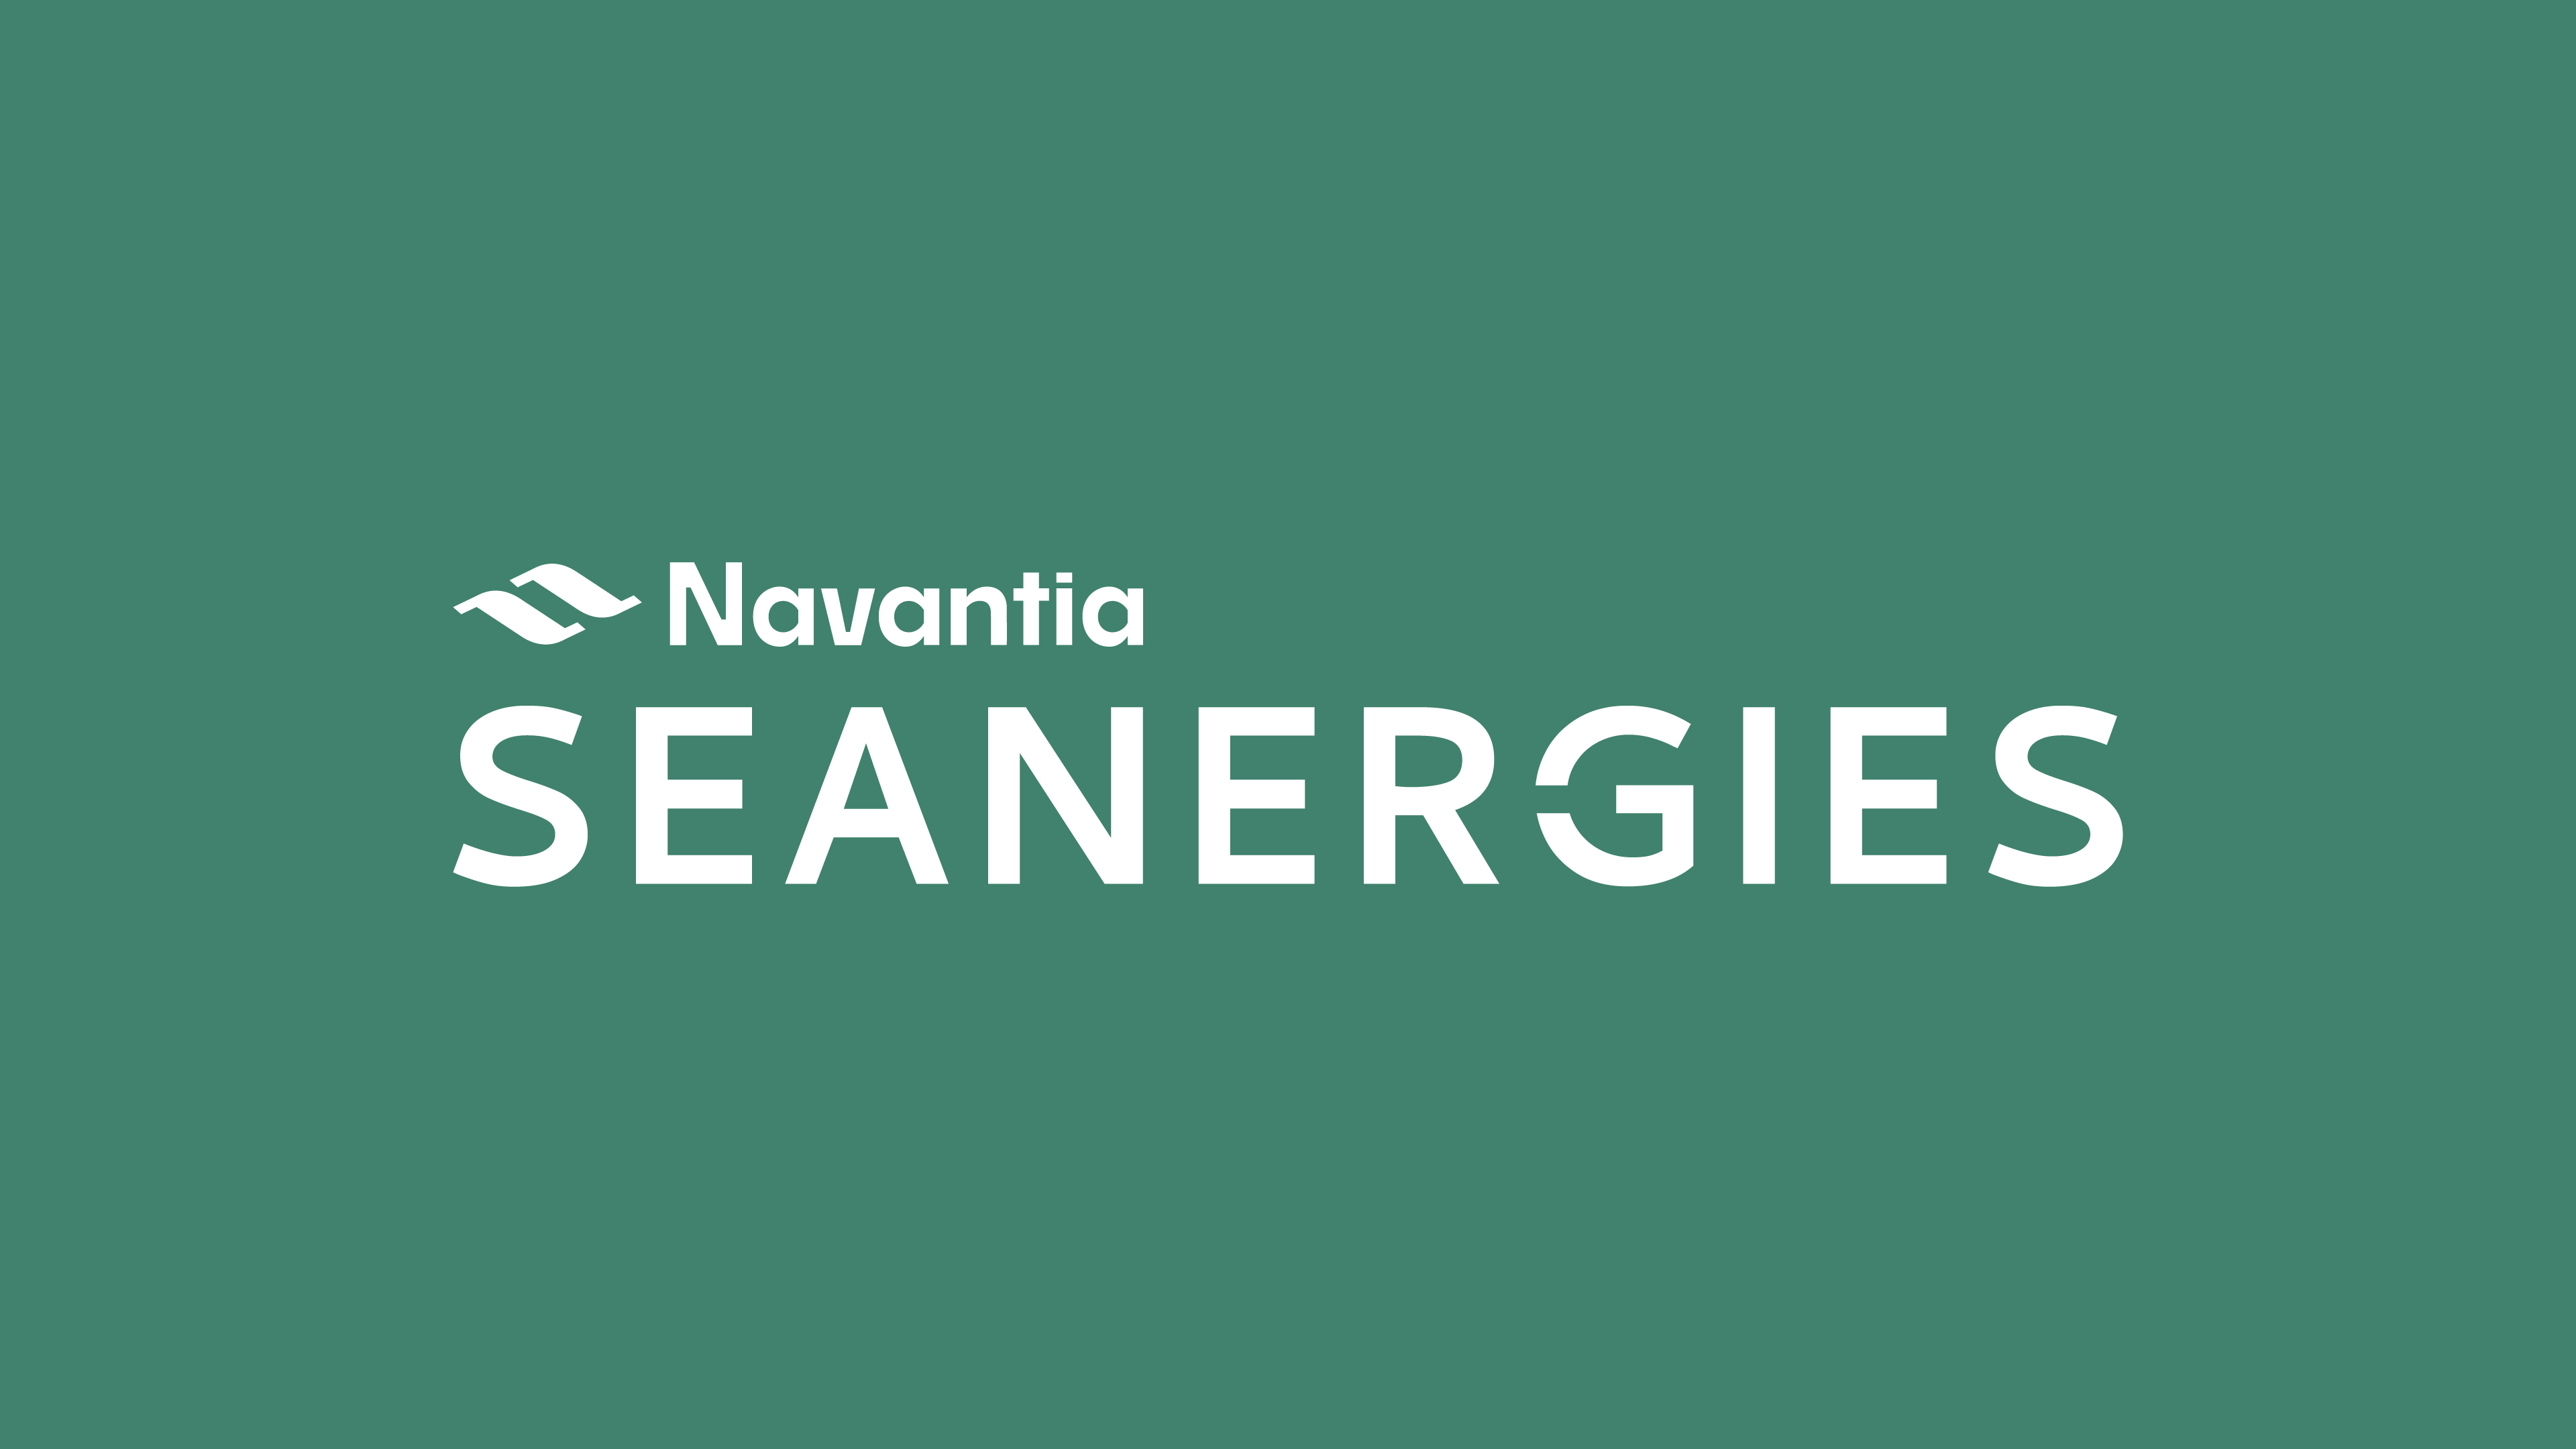 Presentación de la marca Navantia Seanergies